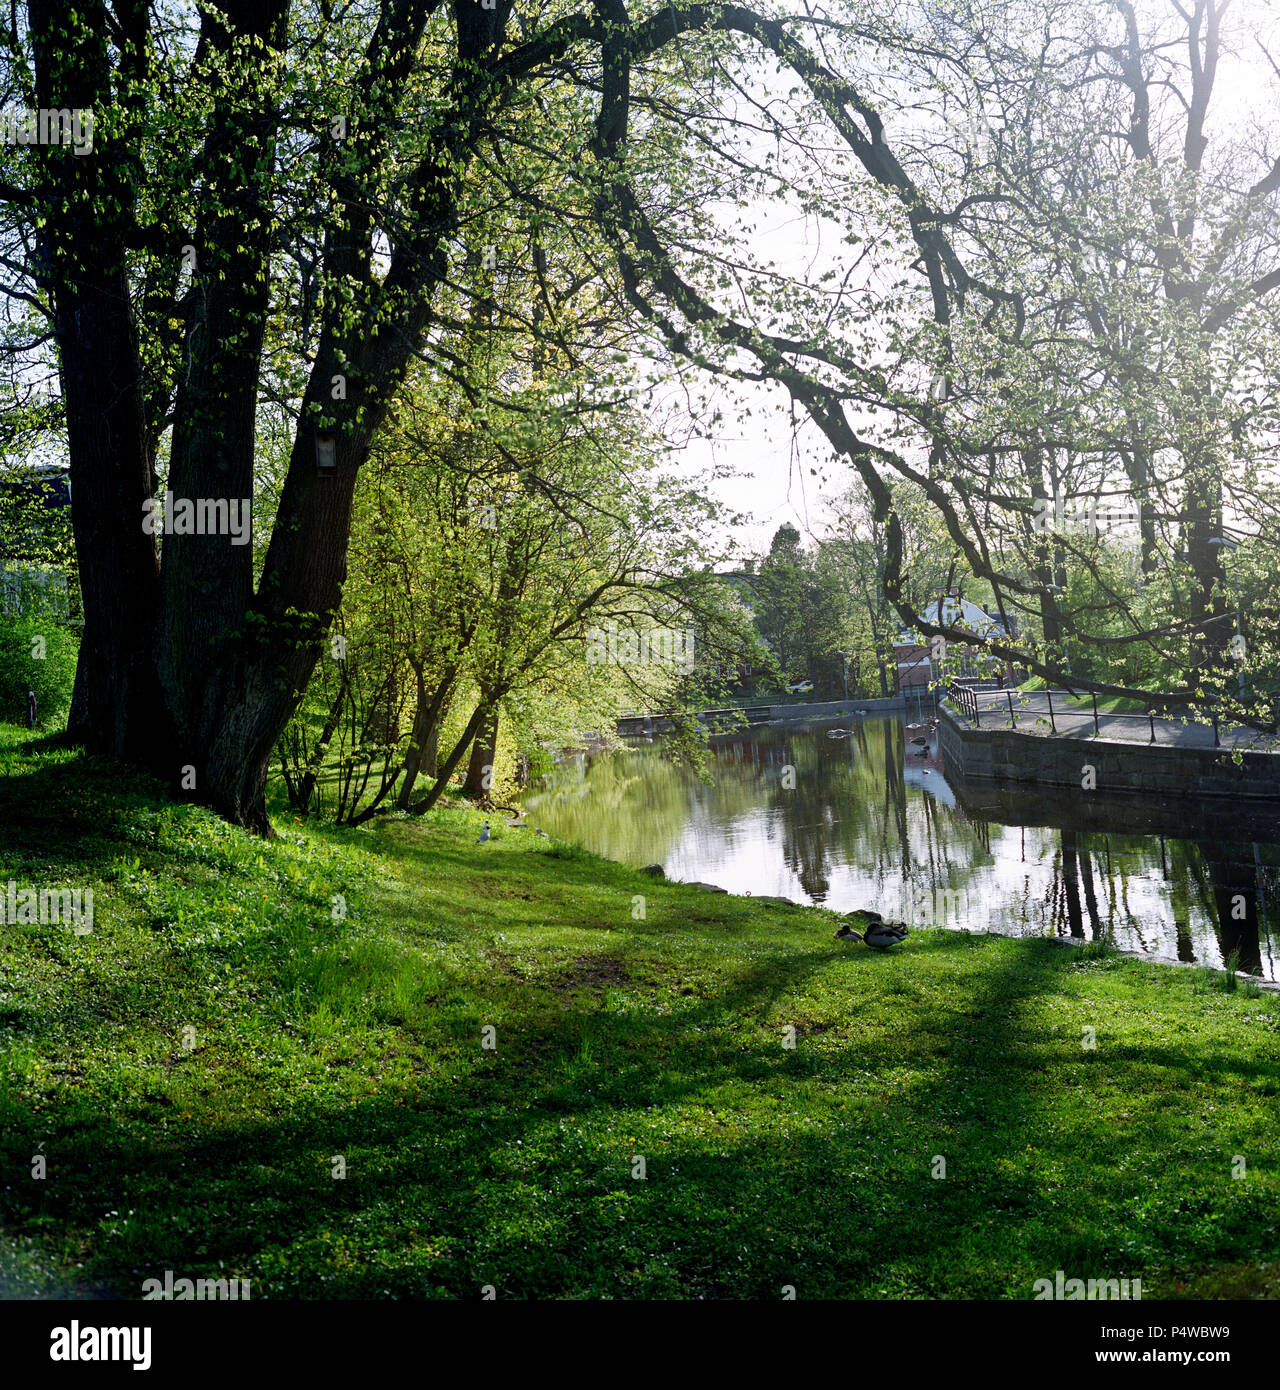 Le petit ruisseau qui traverse la ville de Norrtalje 50 miles au nord de Stockholm, photographié pendant trois saisons, hiver, printemps et automne / l'automne. Banque D'Images